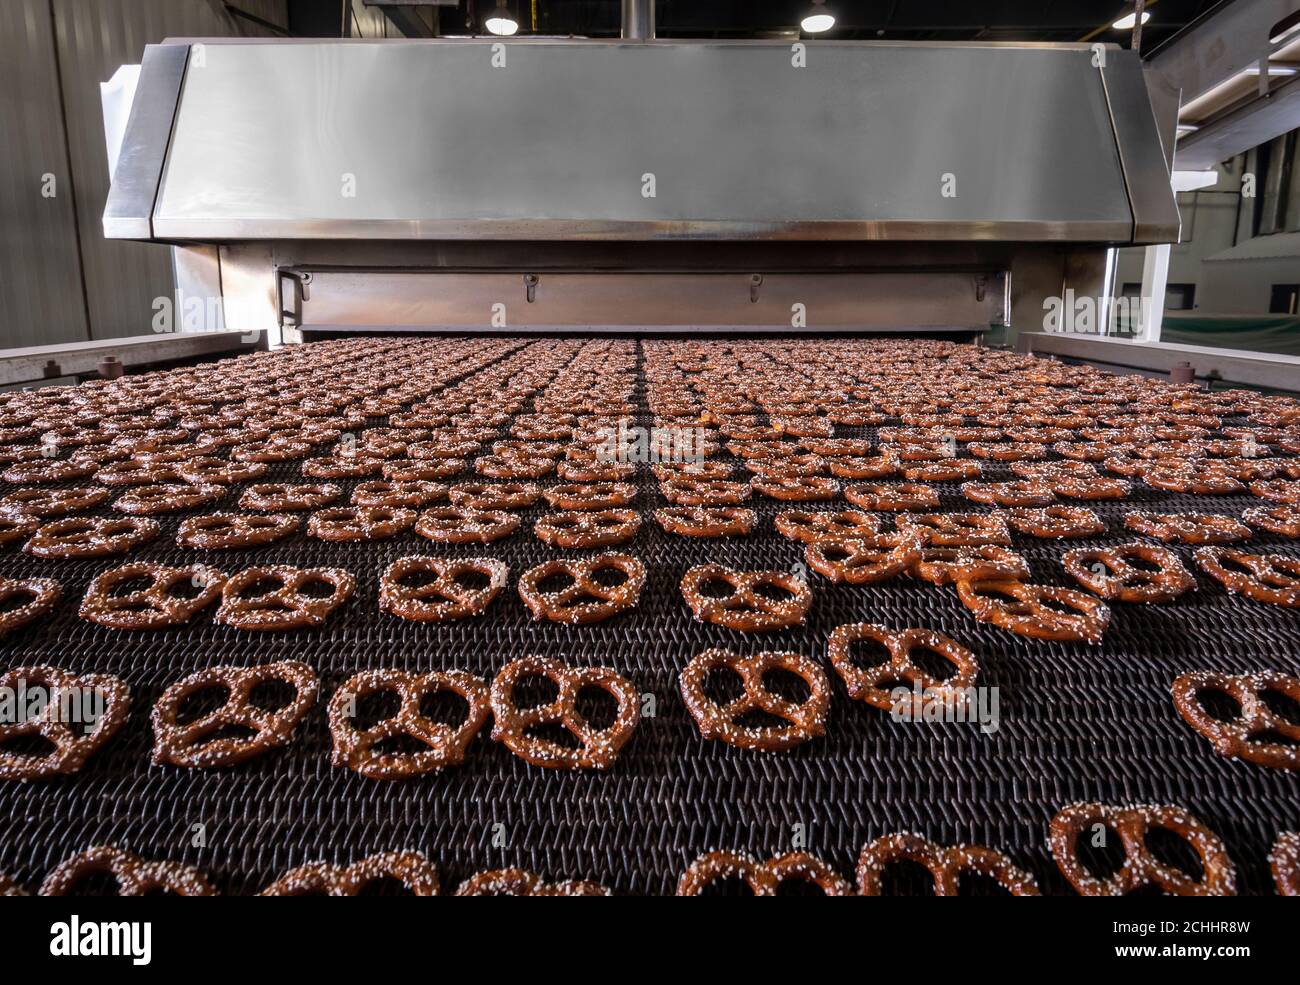 Bretzels cuits dans une boulangerie commerciale, États-Unis Banque D'Images